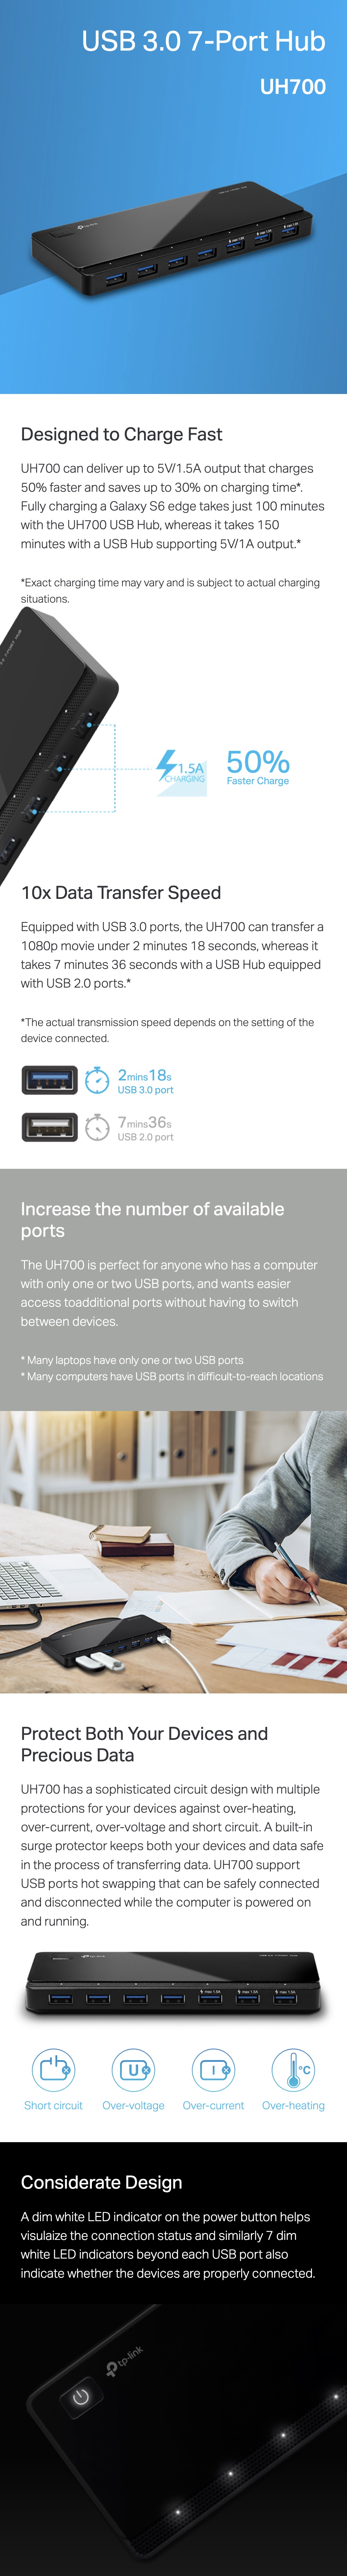 TP-Link-UH700-USB-3.0-7-Port-Hub-Description